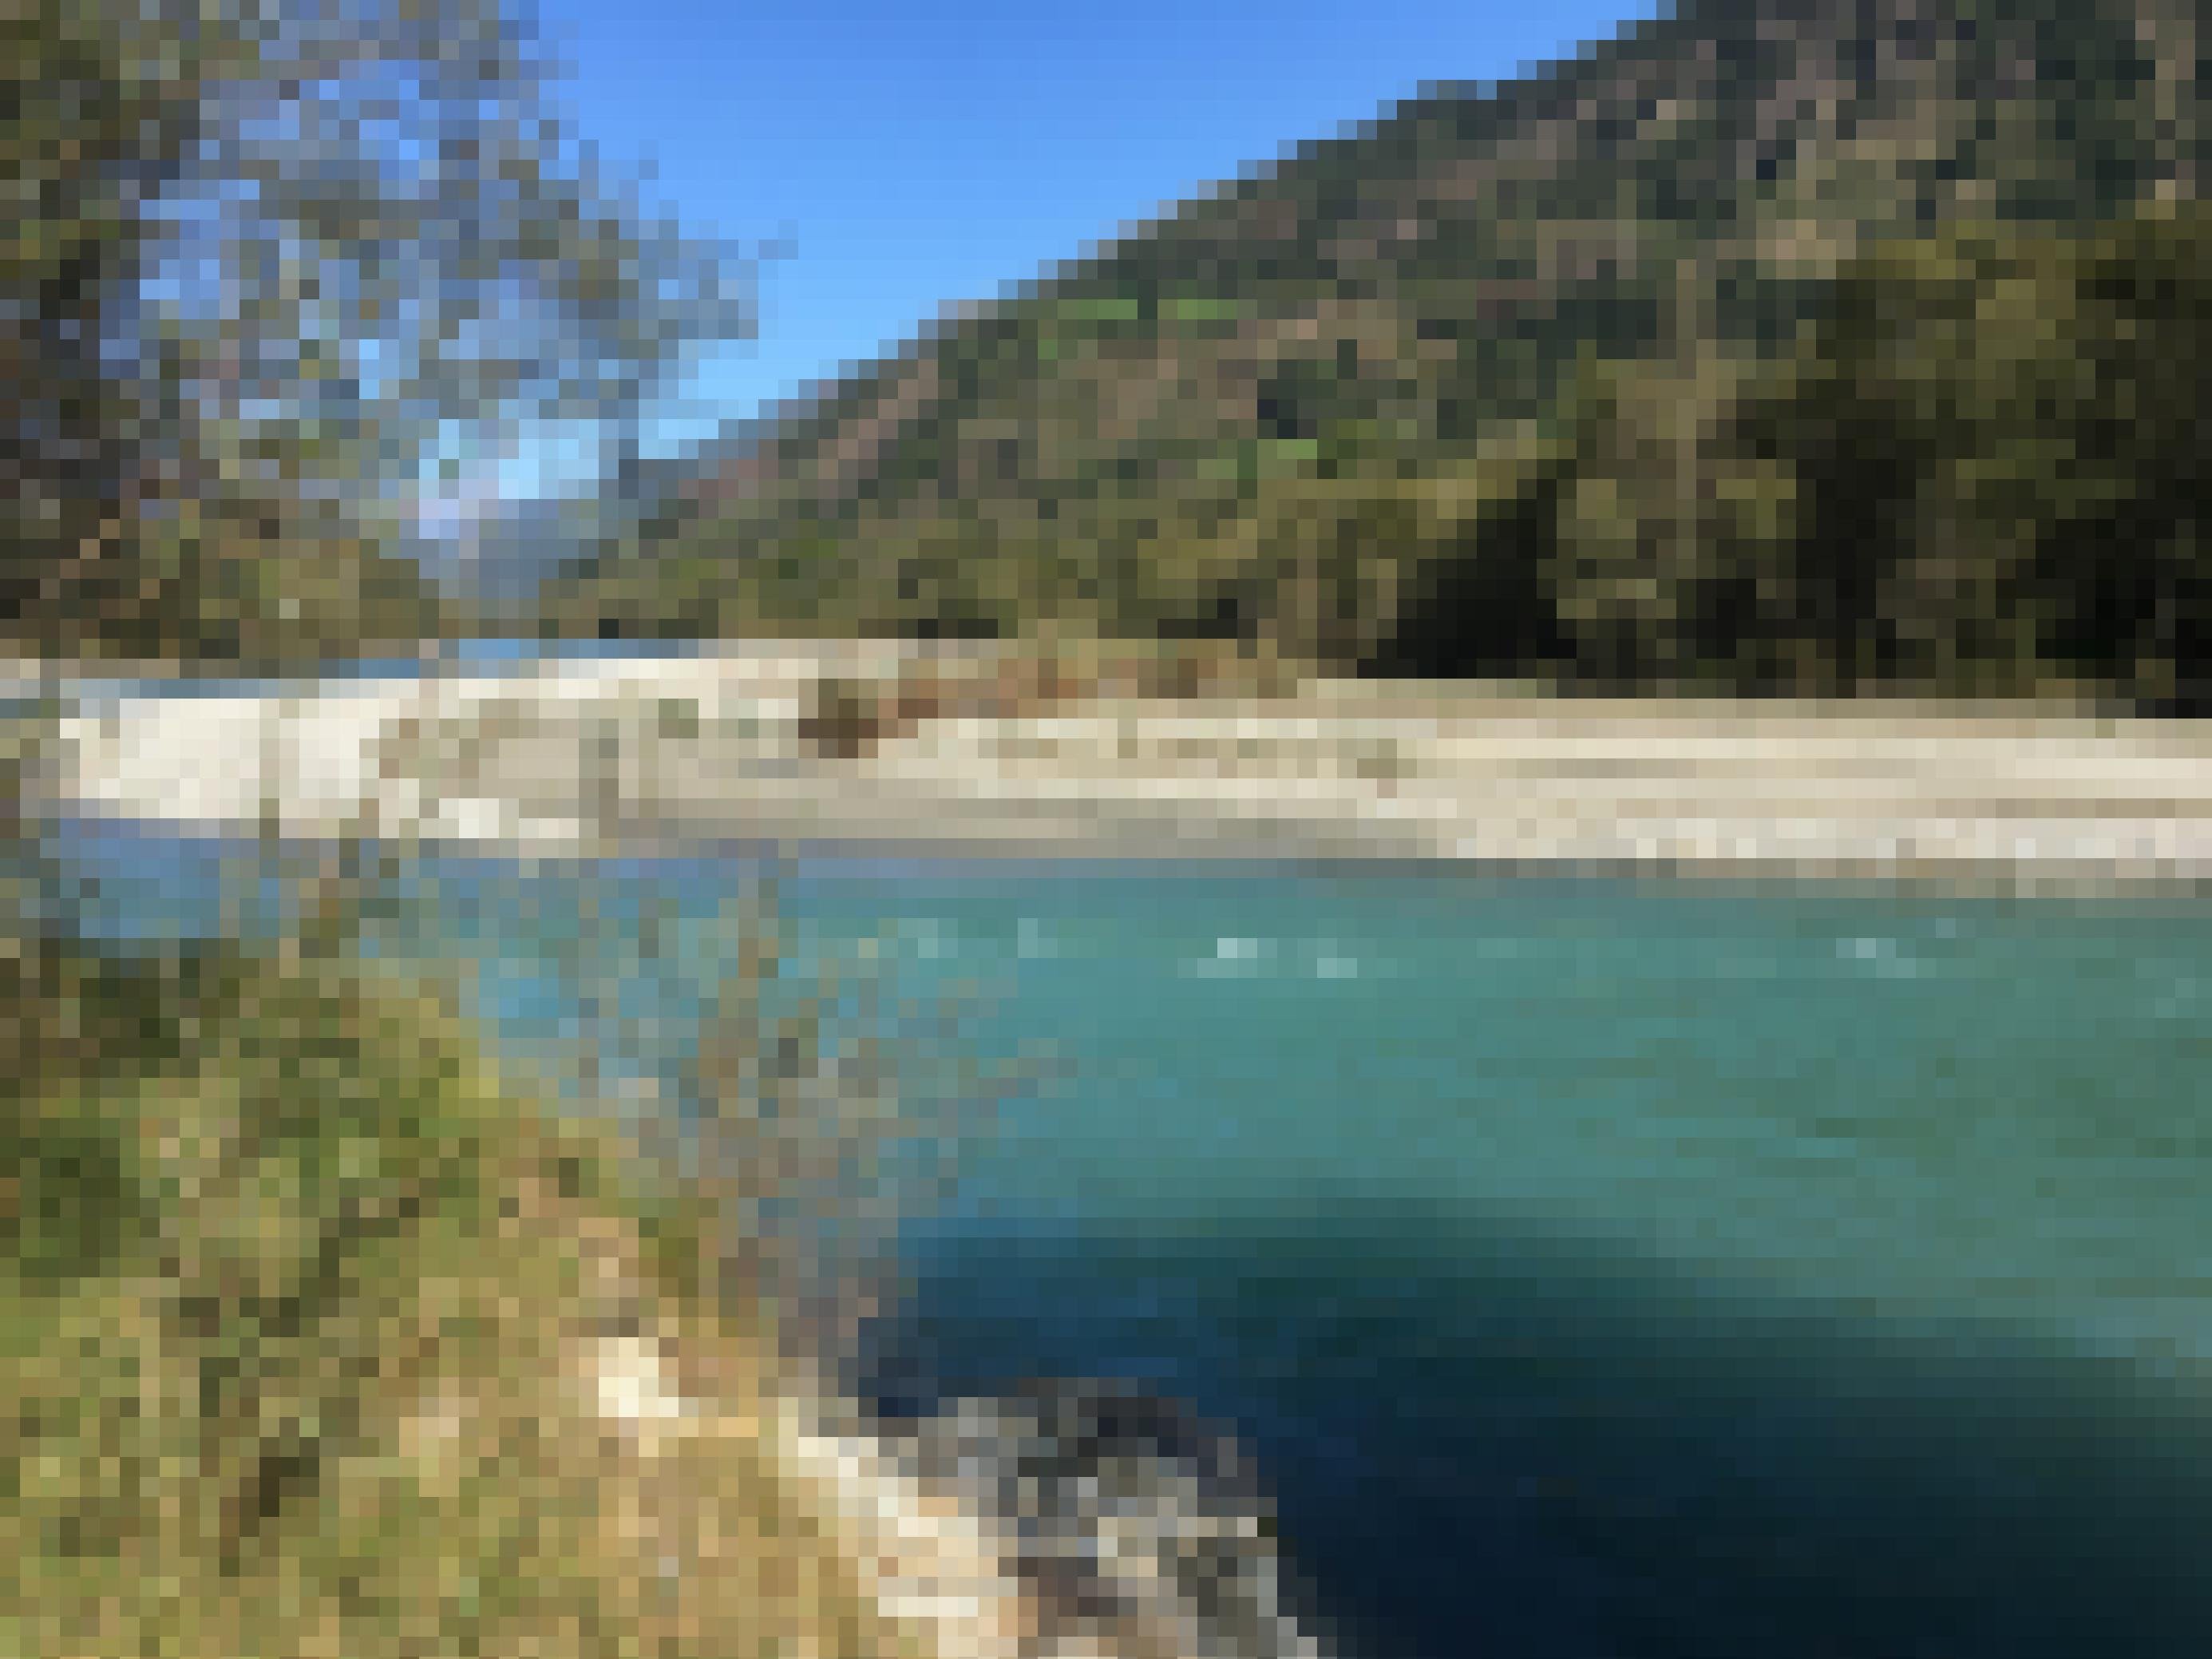 Türkisgrüner Fluss mit Schotterbank, dahinter ein waldbewachsener Berg